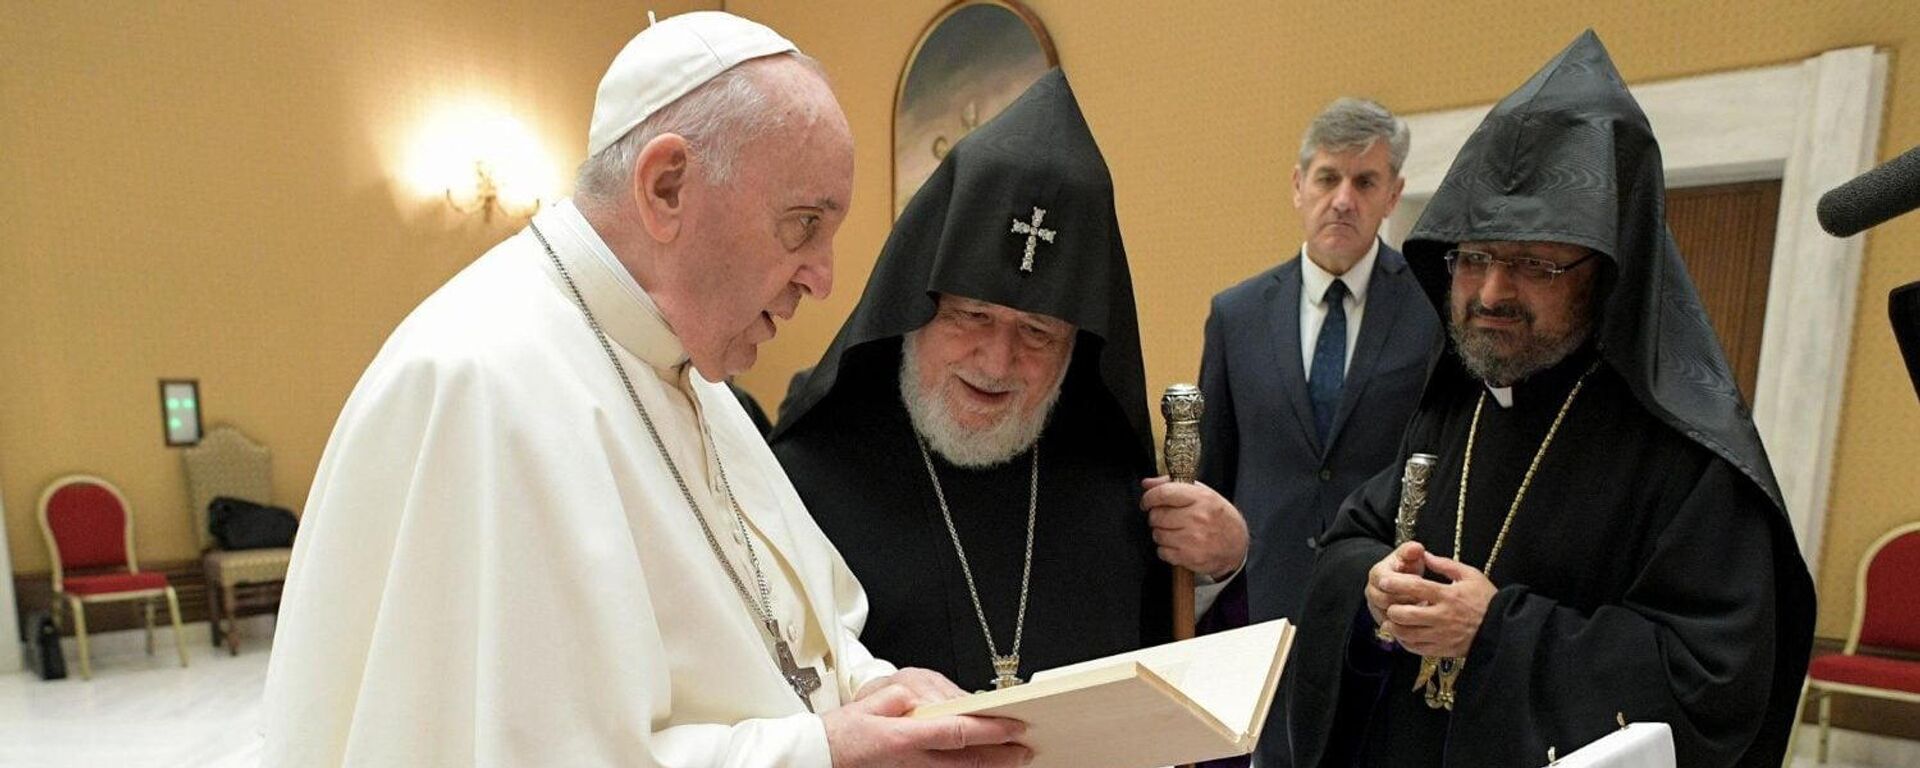 Ամենայն հայոց կաթողիկոս Գարեգին Երկրորդը Վատիկանում հանդիպել է Հռոմի Ֆրանցիսկոս պապի հետ - Sputnik Արմենիա, 1920, 06.10.2021